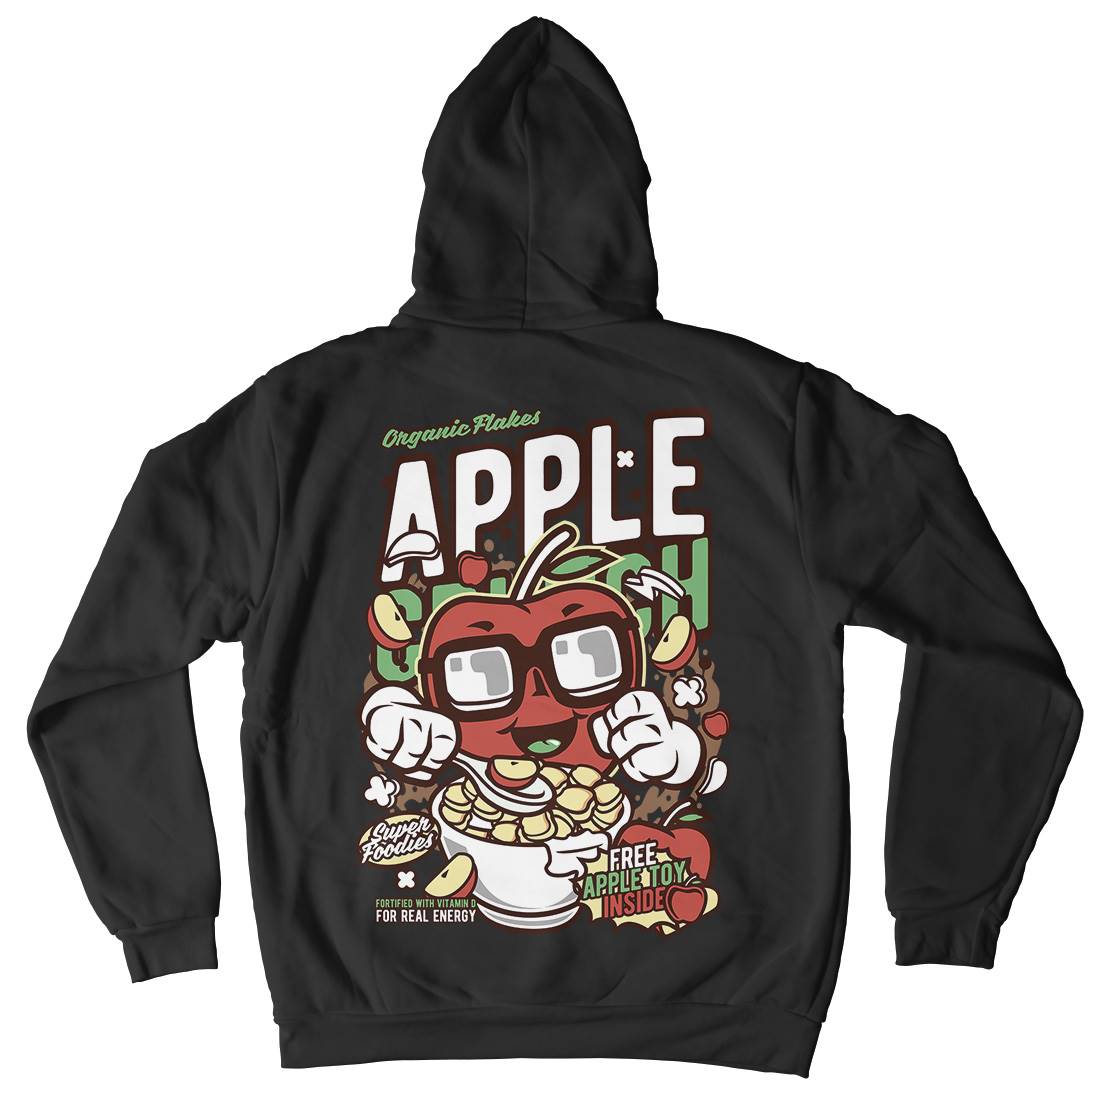 Apple Crunch Kids Crew Neck Hoodie Food C480